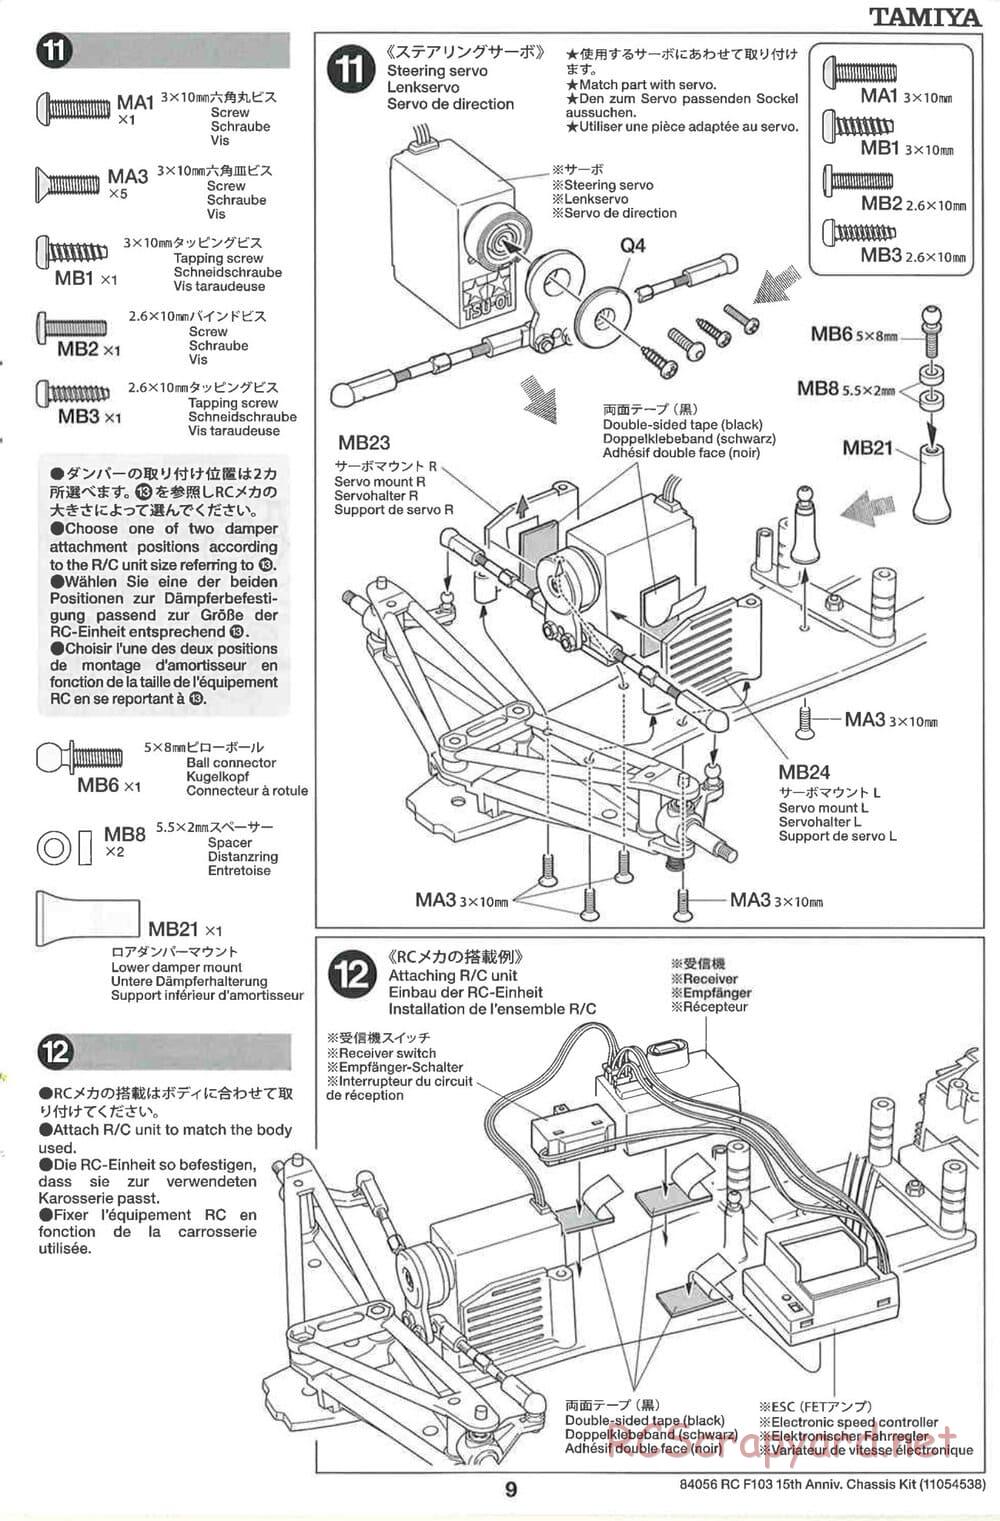 Tamiya - F103 15th Anniversary Chassis - Manual - Page 9